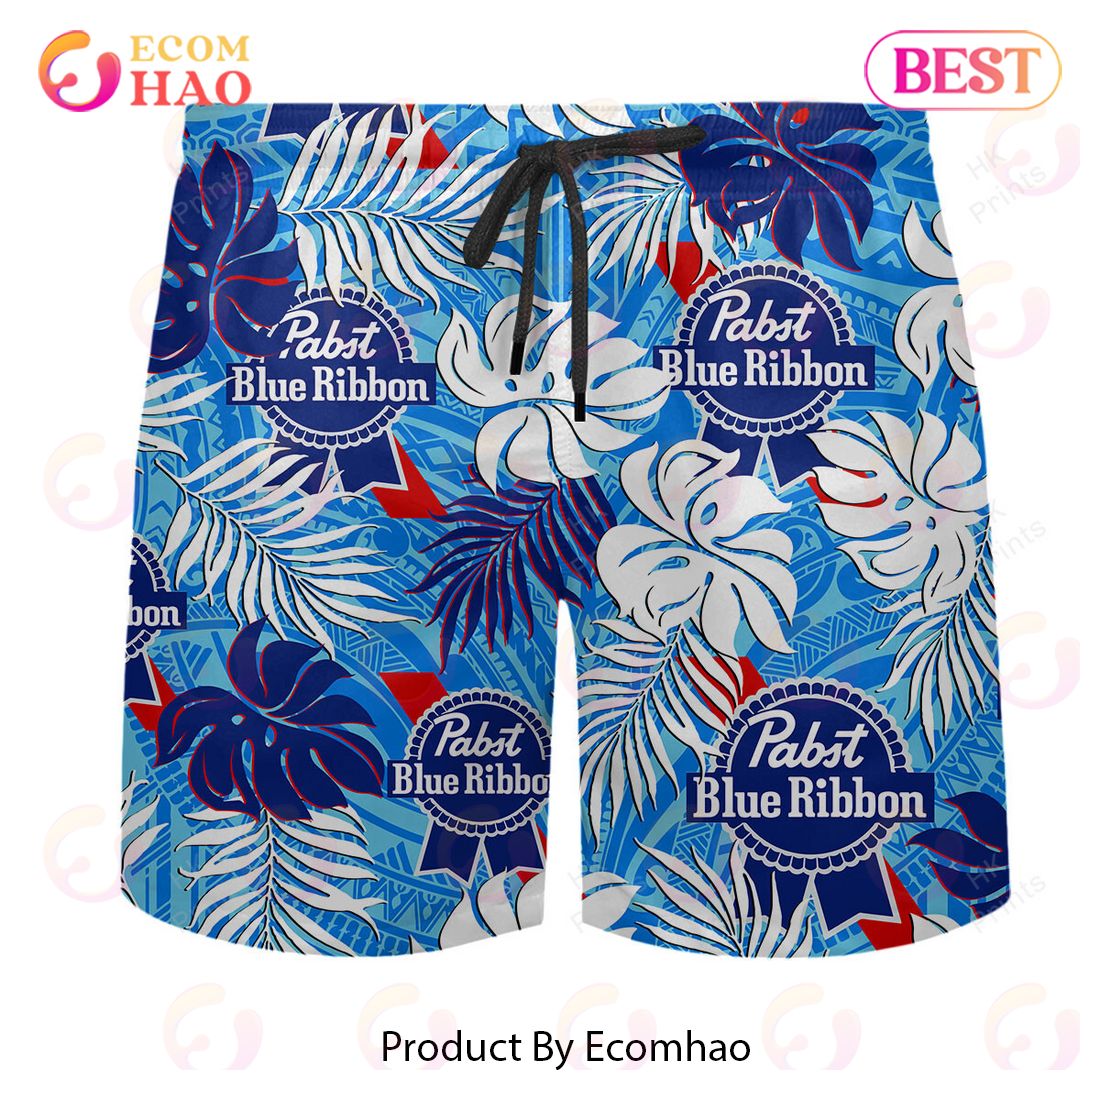 Pabst Blue Ribbon Tattoo Hawaiian Shirt And Shorts  Ecomhao Store